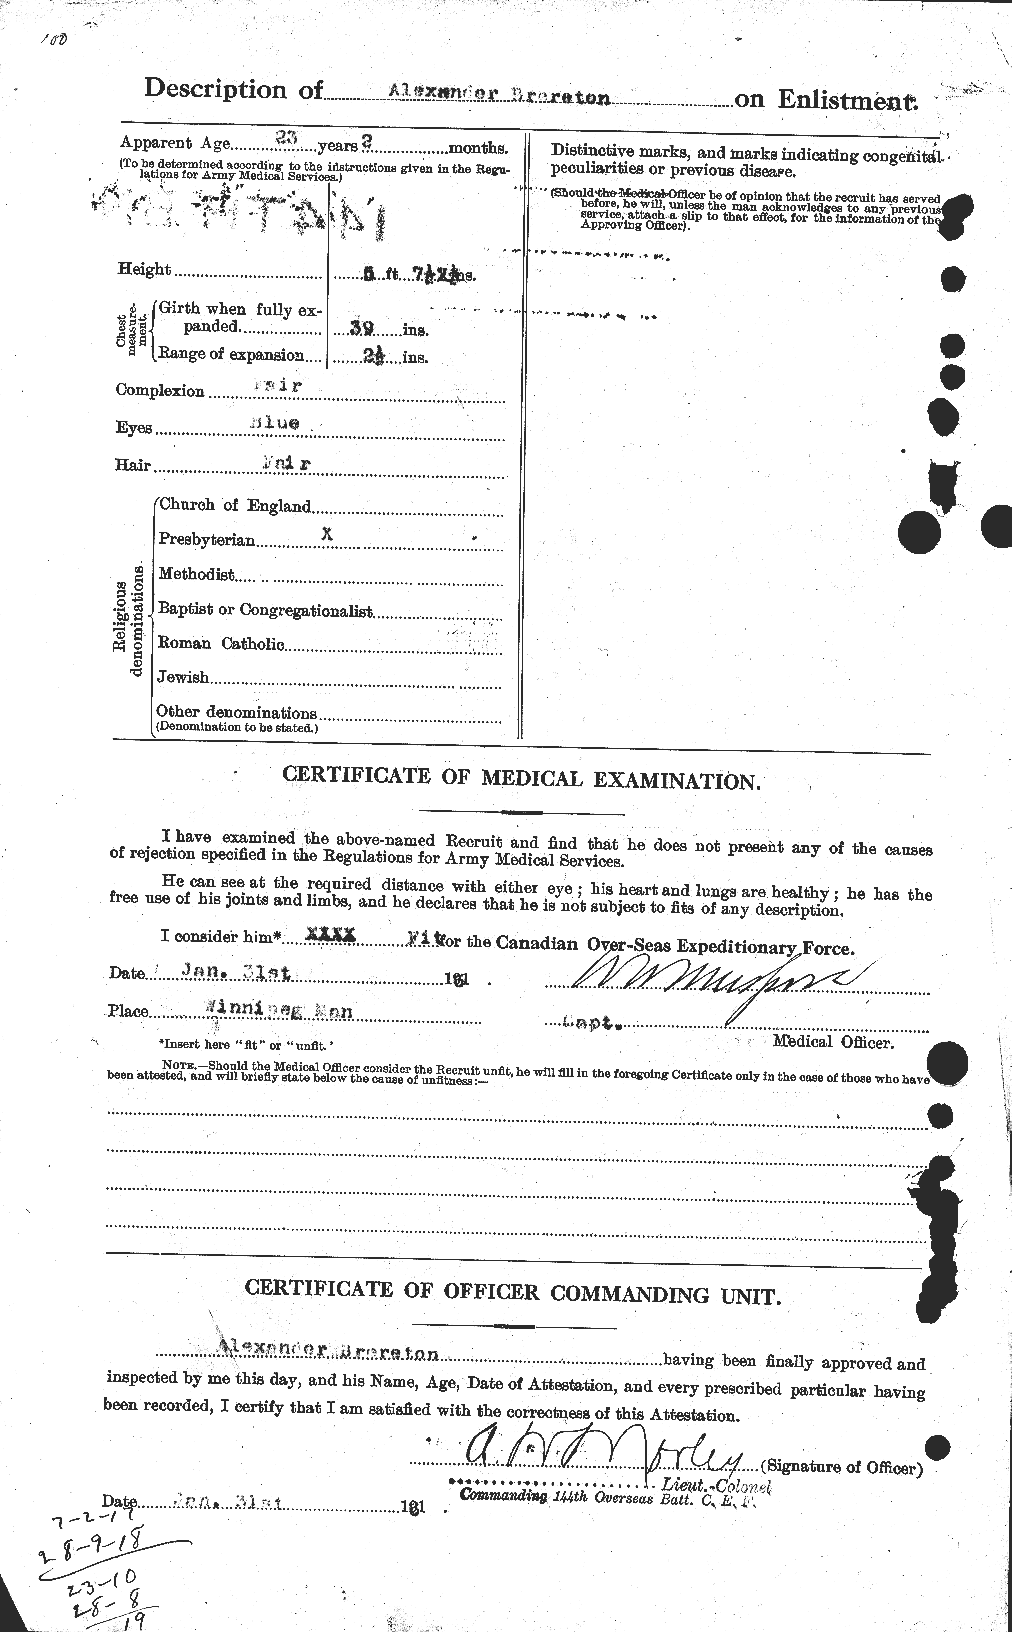 Dossiers du Personnel de la Première Guerre mondiale - CEC 262678b